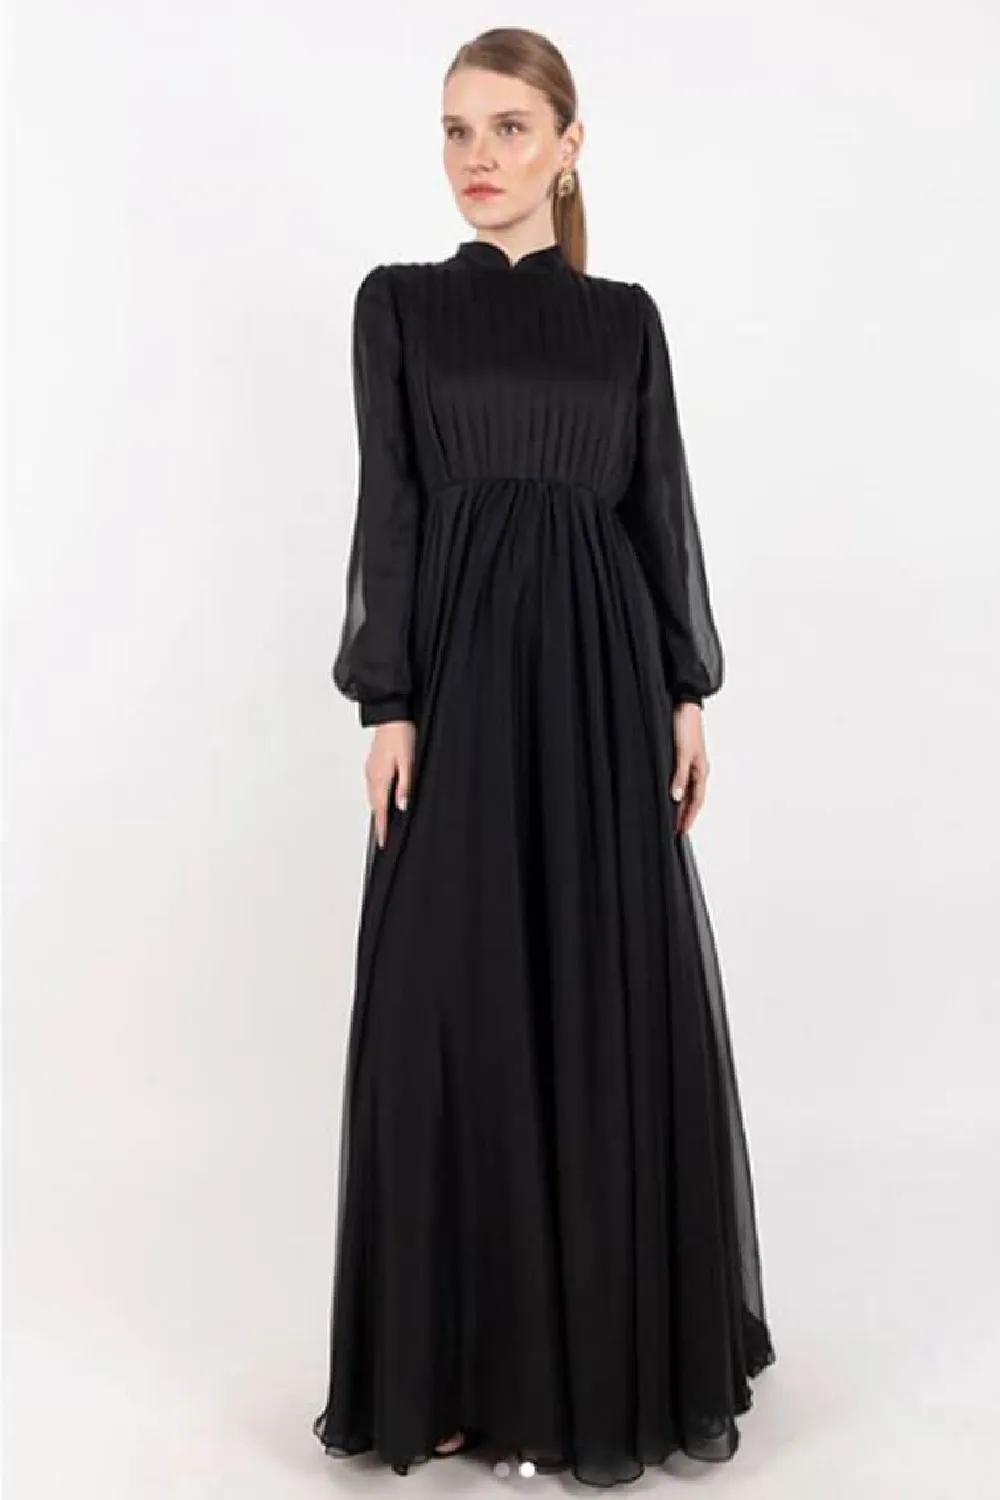 Mauli Black Semi Formal Dress